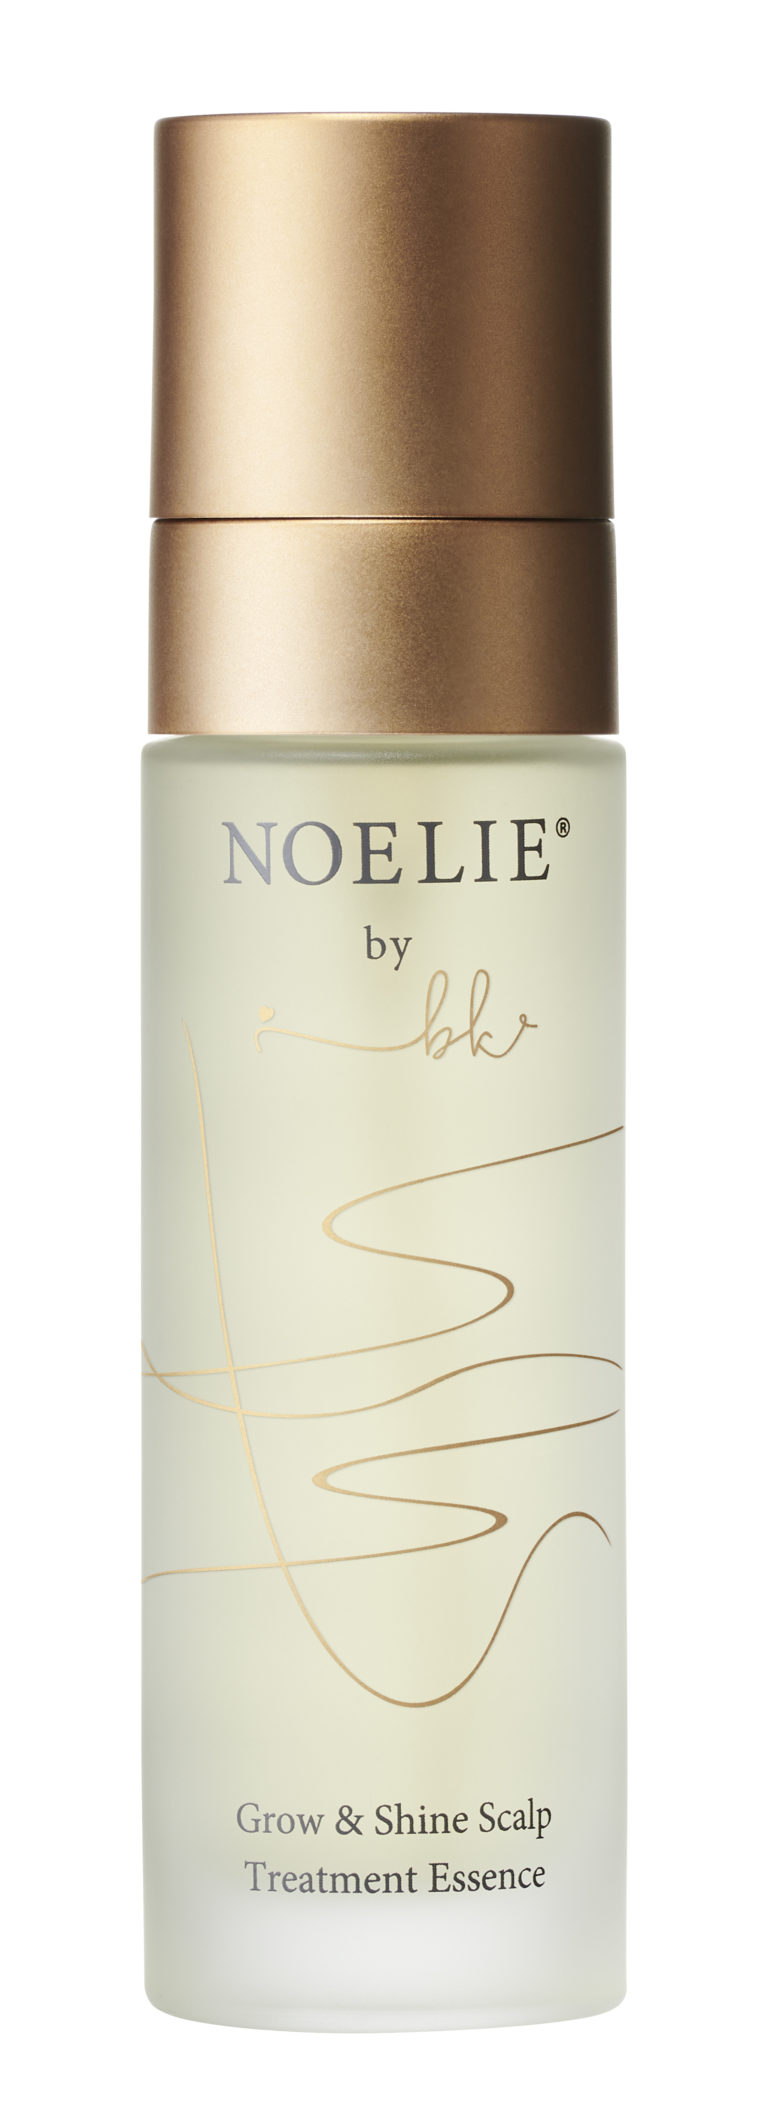 Grow & Shine Scalp Treatment Essence von Noelie